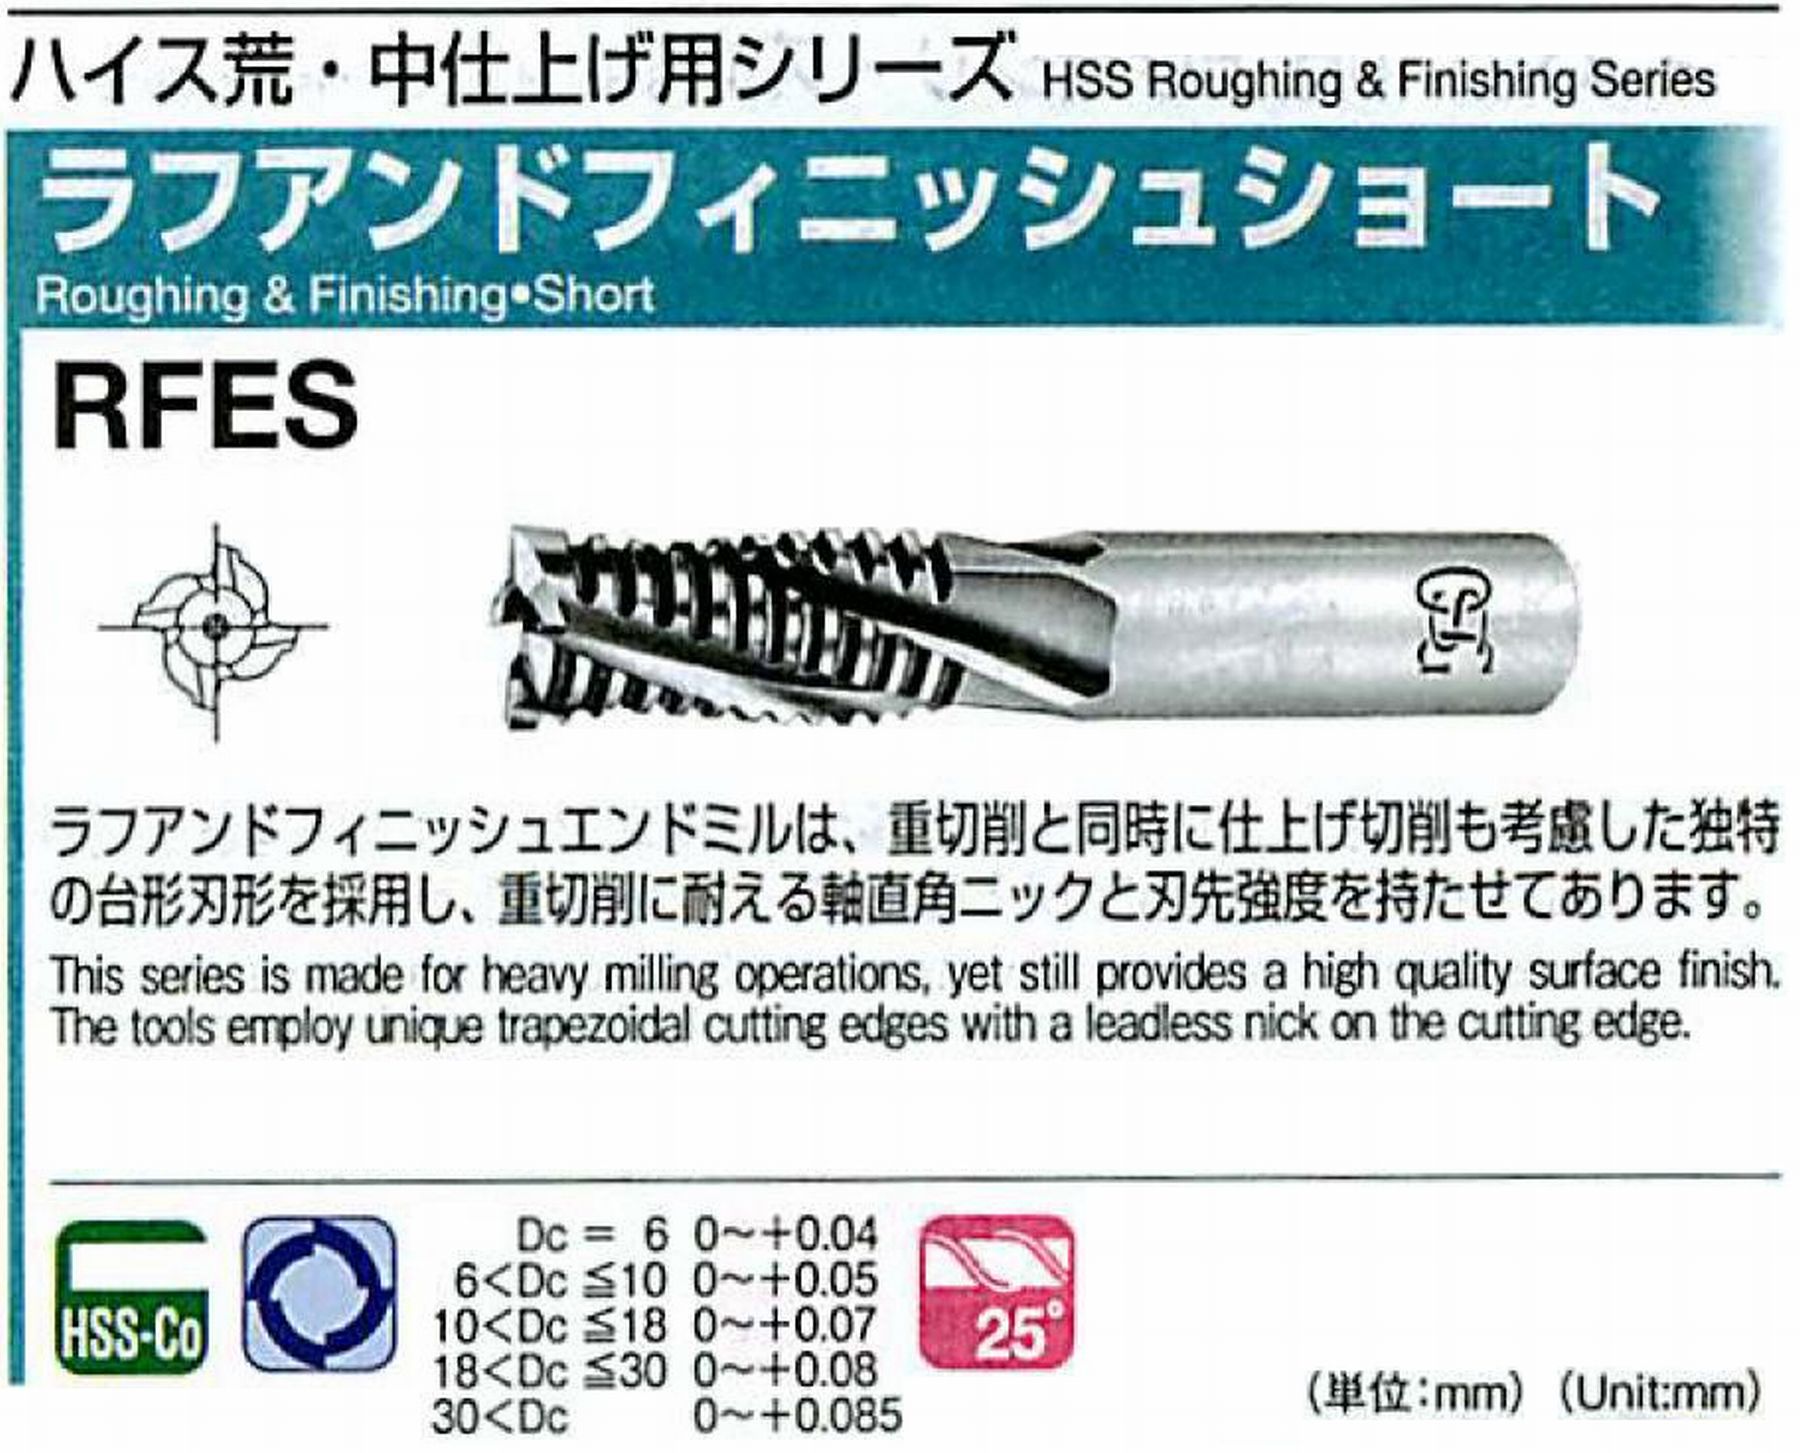 オーエスジー/OSG ラフアンドフィニッシュ ショート RFES 外径8 全長63 刃長20 シャンク径8mm 刃数4